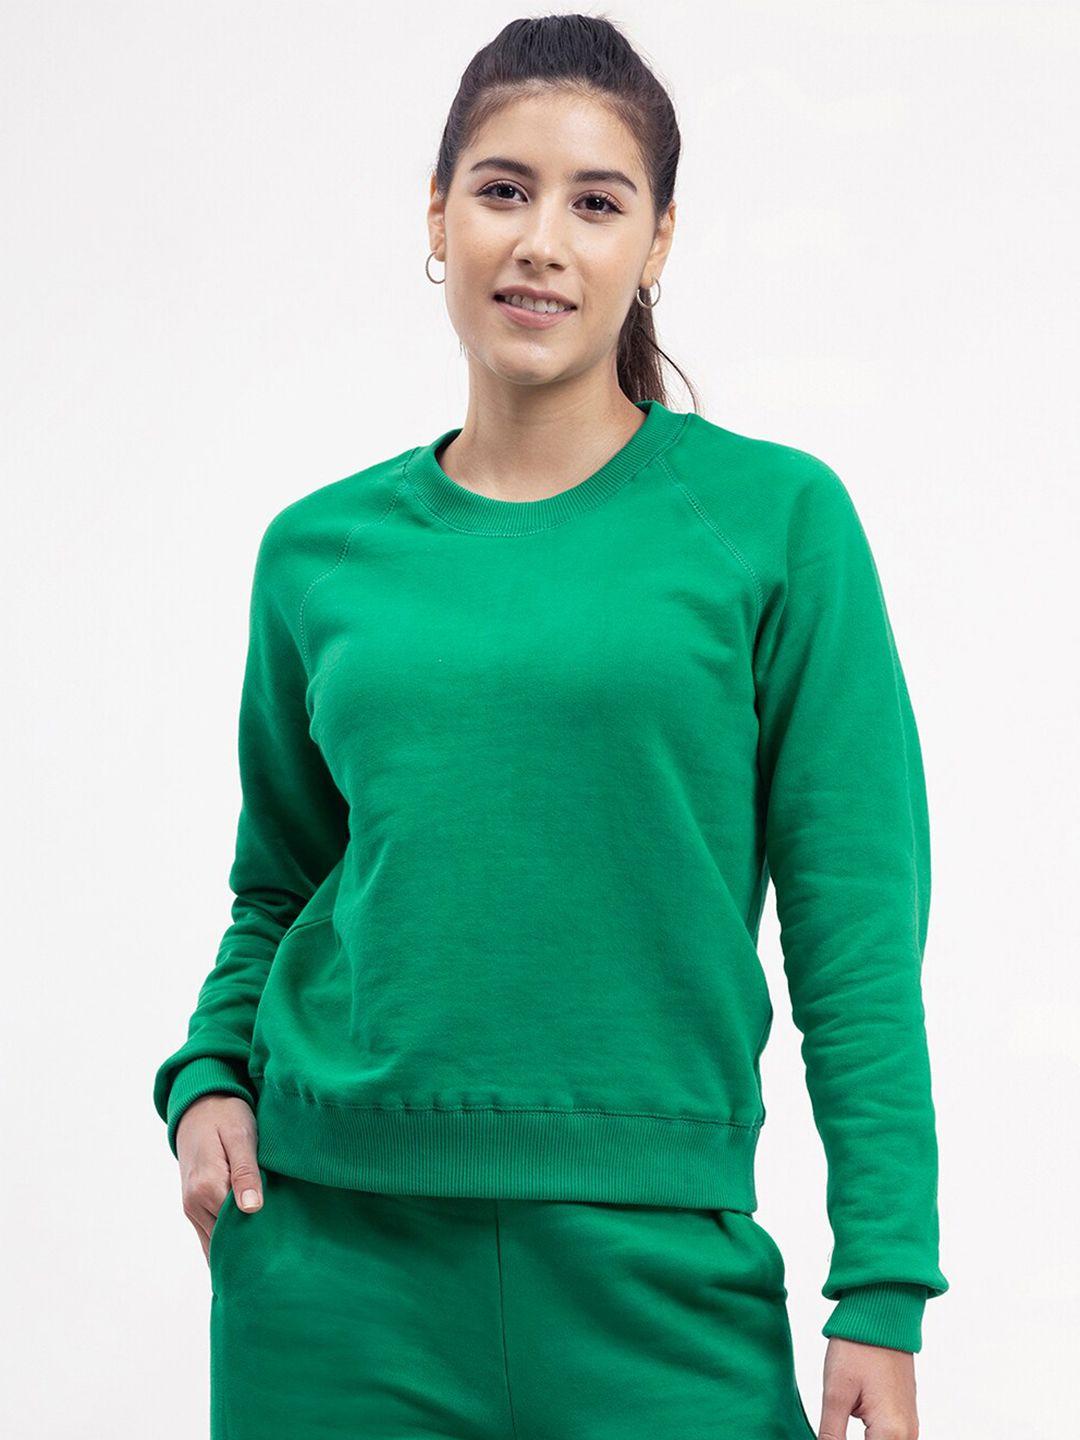 fablestreet women green solid long sleeves sweatshirt